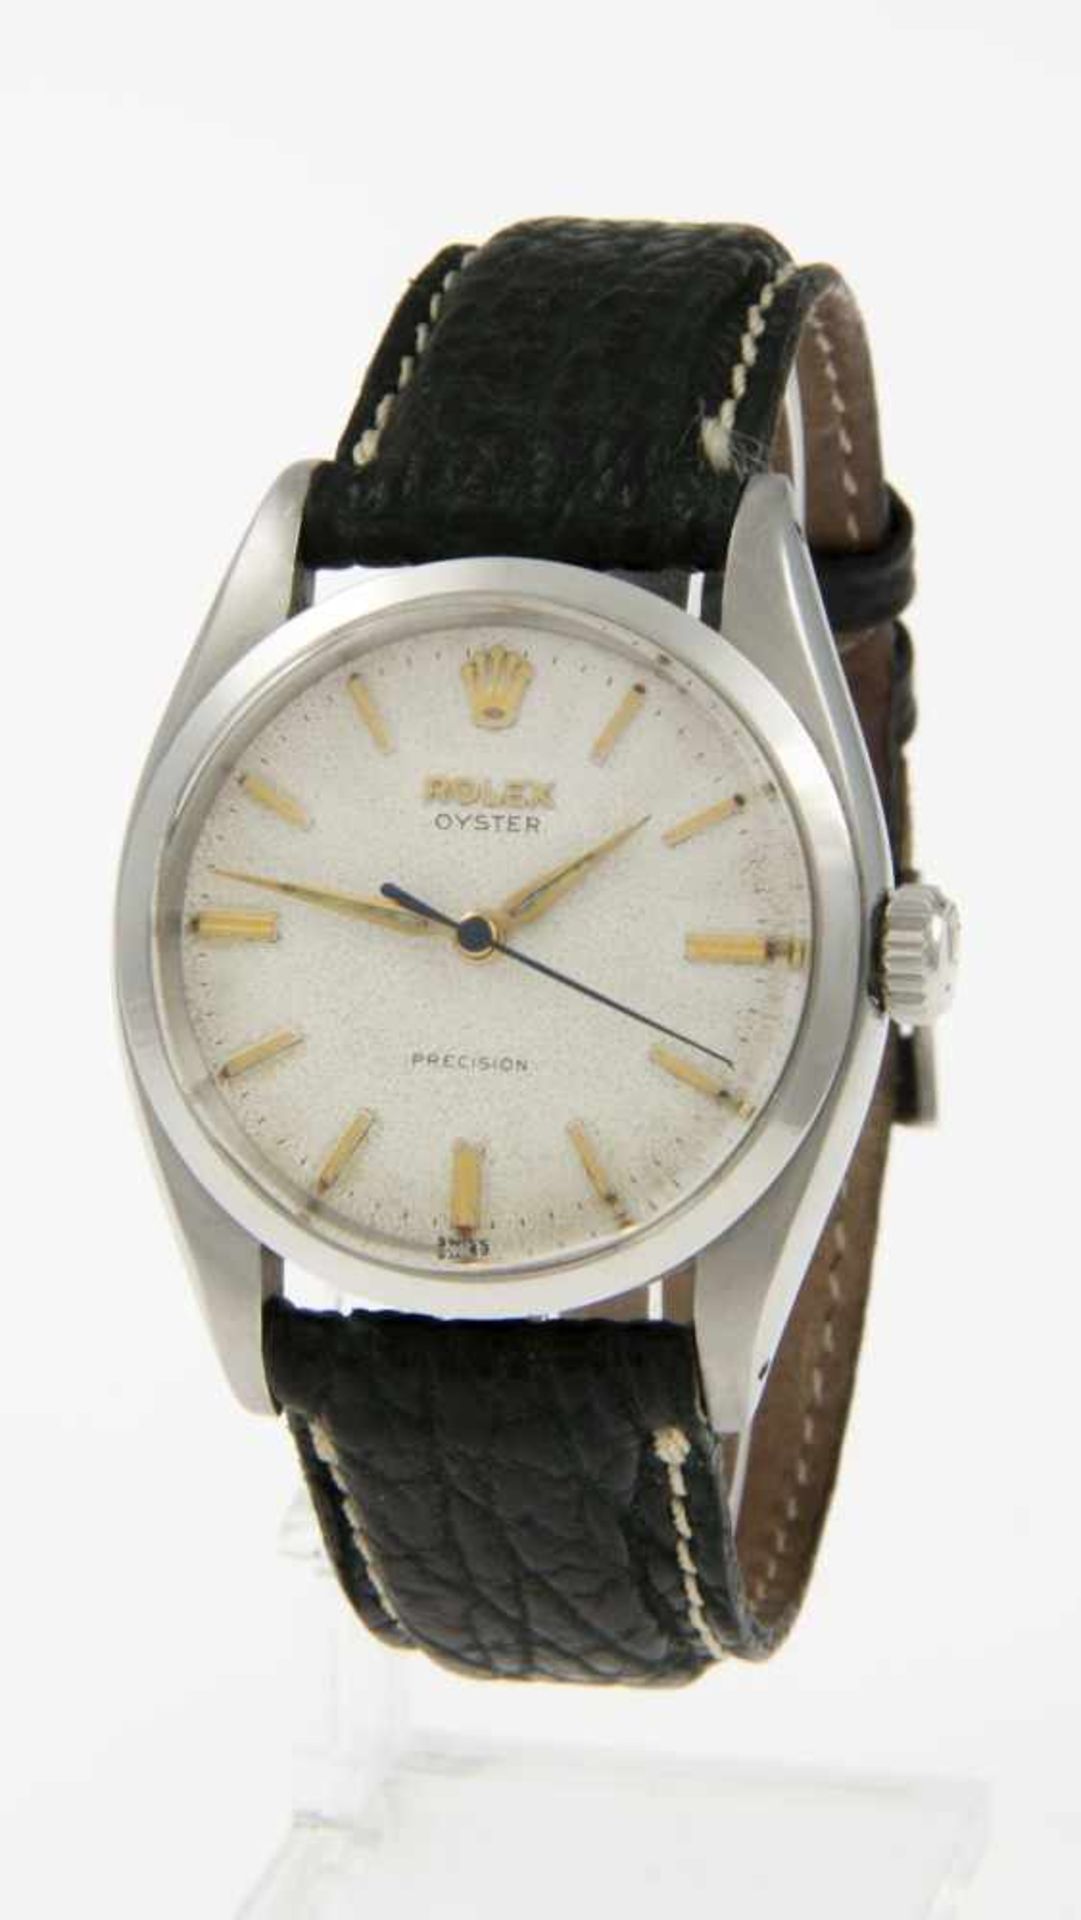 Rolex-Armbanduhr PrecisionStahlgehäuse. Plexiglas. Weißes Zifferblatt mit goldfarbenen